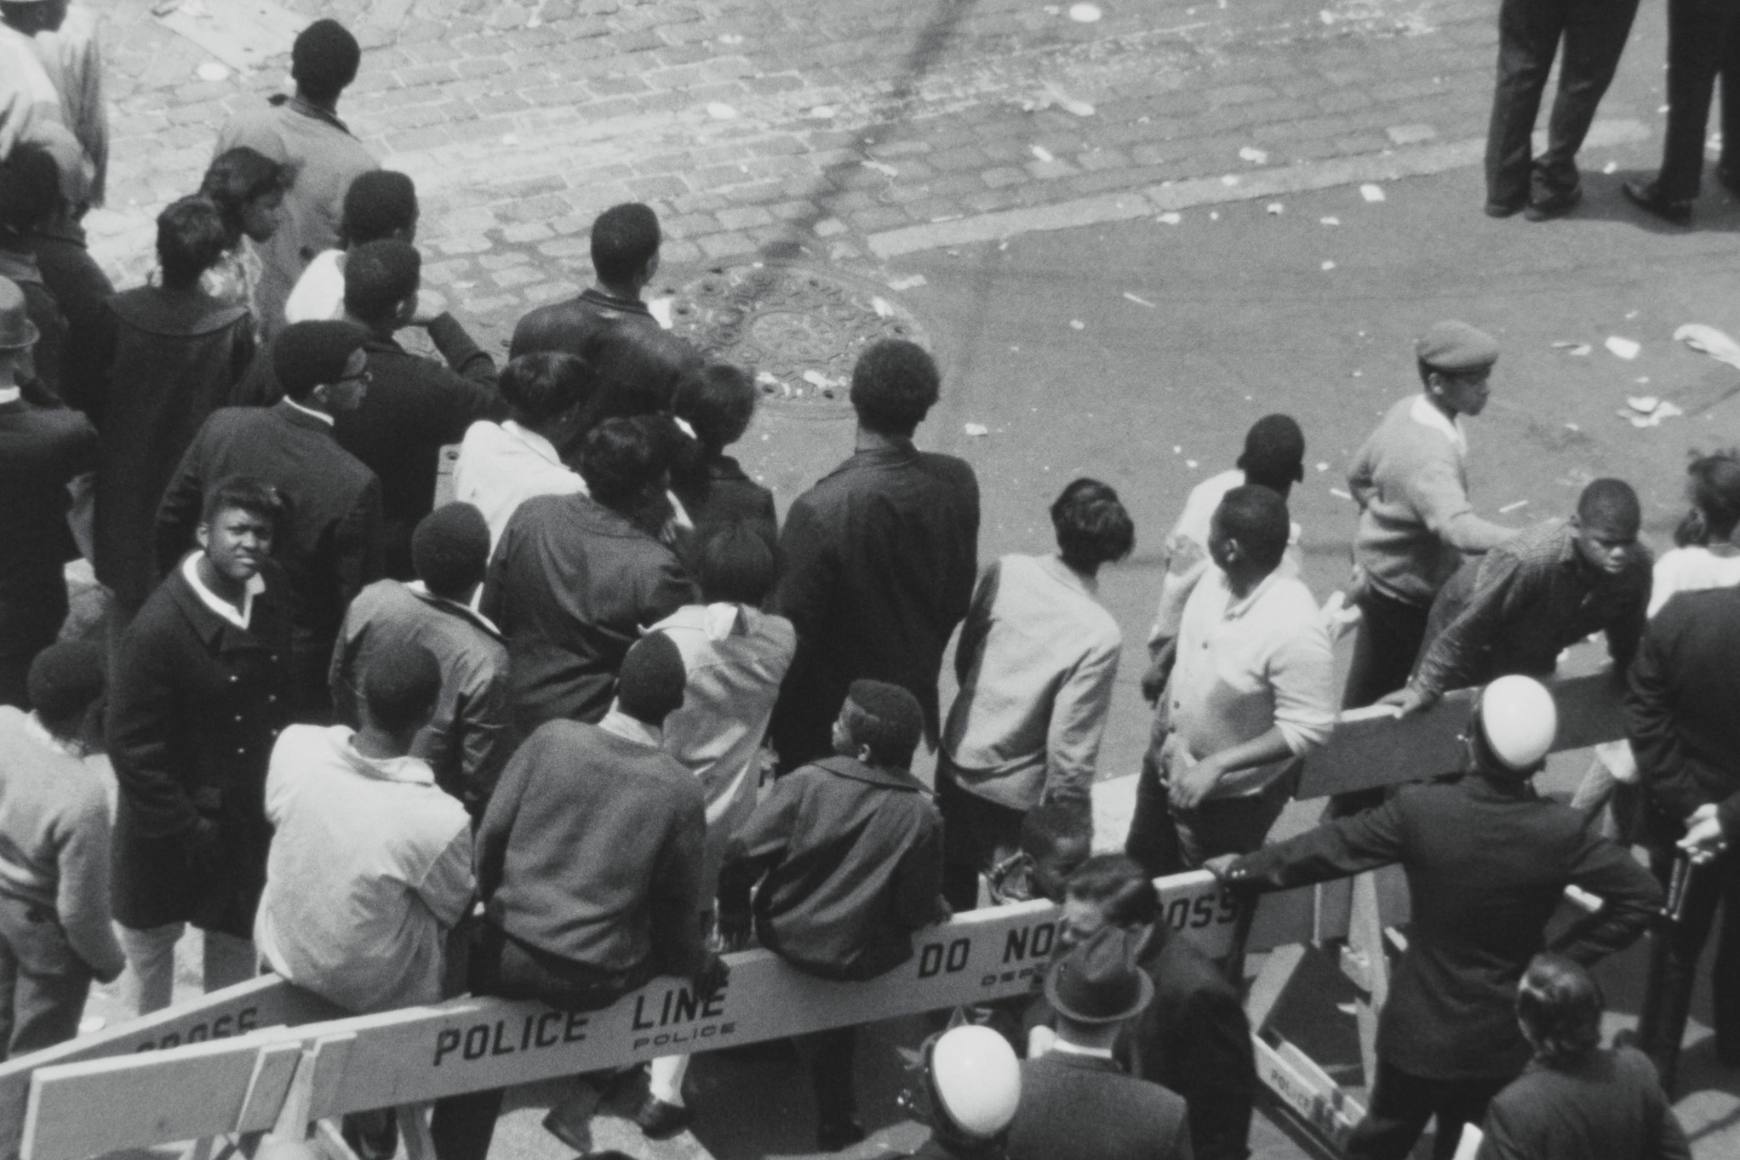 Una vista de pájaro en blanco y negro de un grupo de personas paradas en la calle. Barricadas policiales delimitan el espacio.